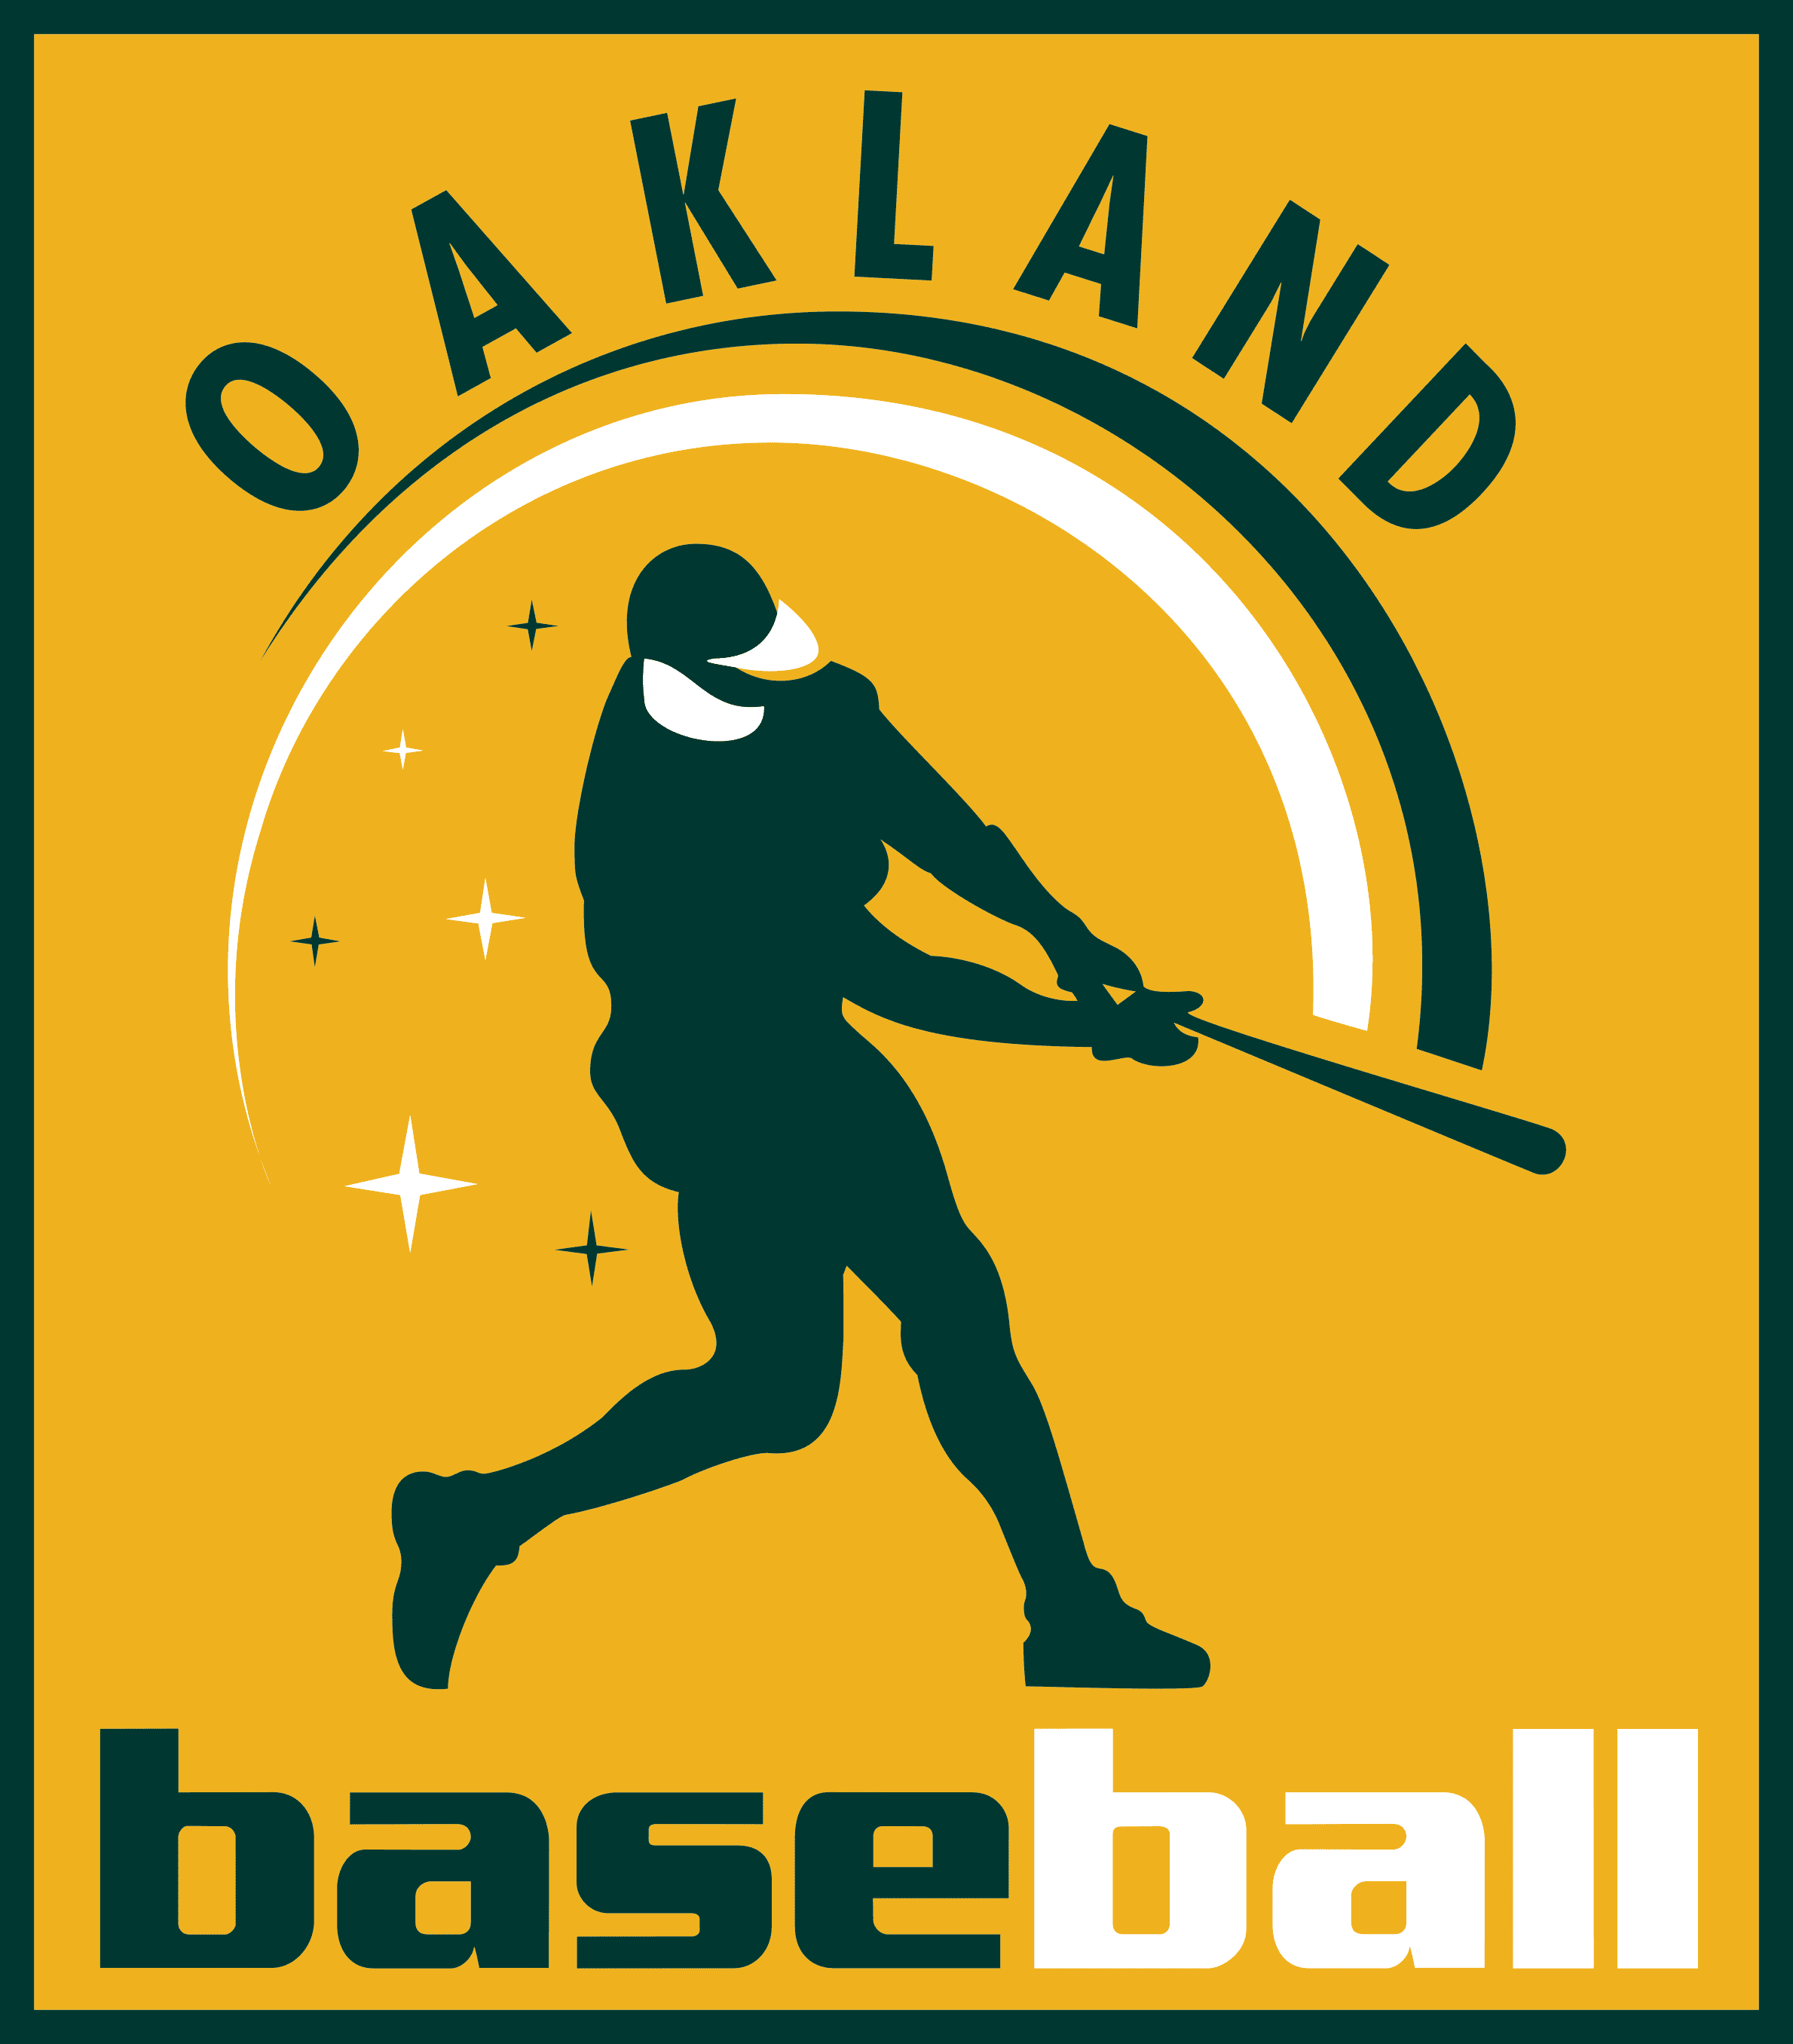 Oakland Athletics  Oakland athletics, Mlb logos, Baseball teams logo